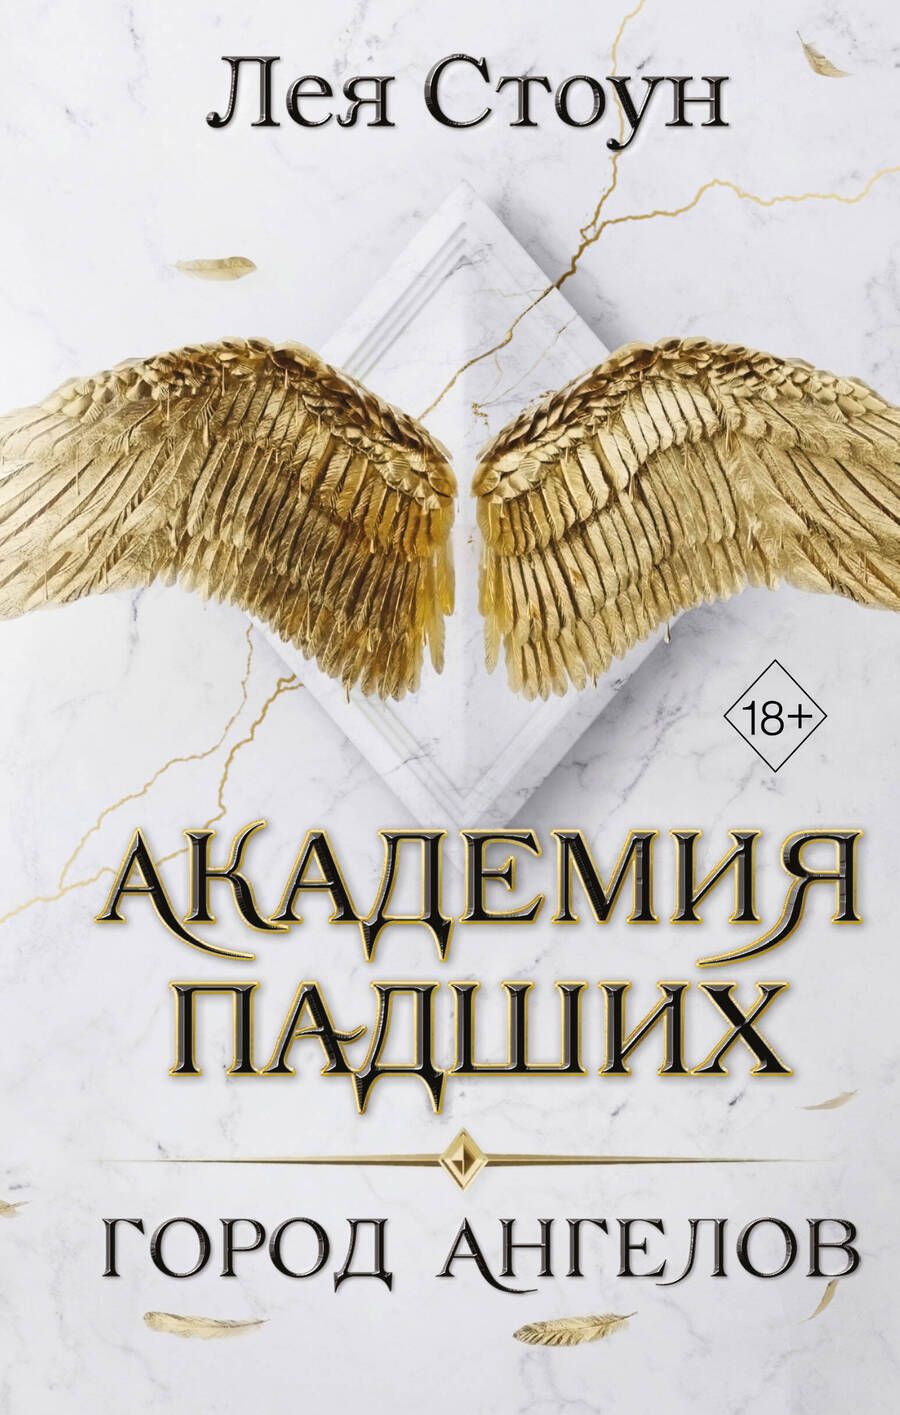 Обложка книги "Стоун: Город Ангелов. Год первый"